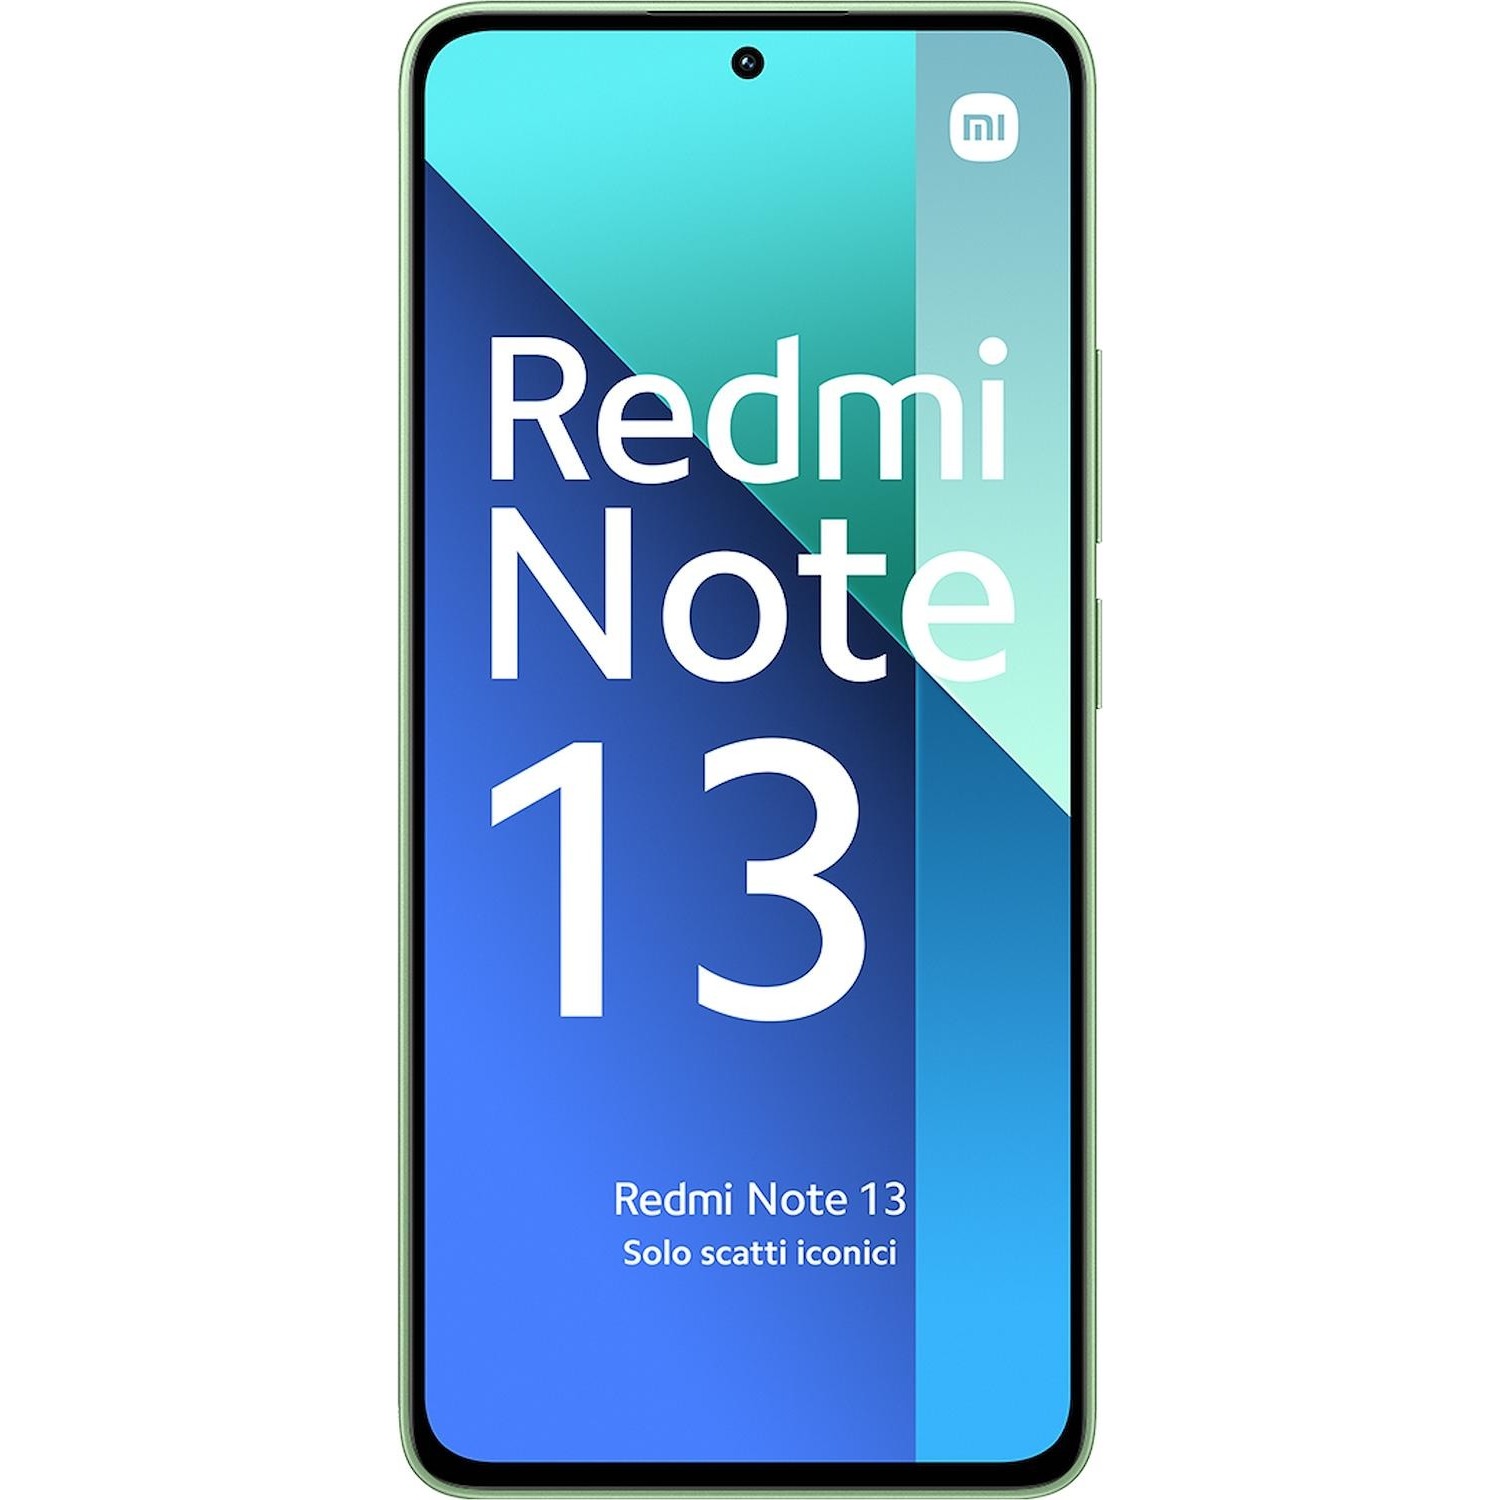 Immagine per Smartphone Xiaomi Redmi Note 13 8/256GB 4G mint green verde da DIMOStore